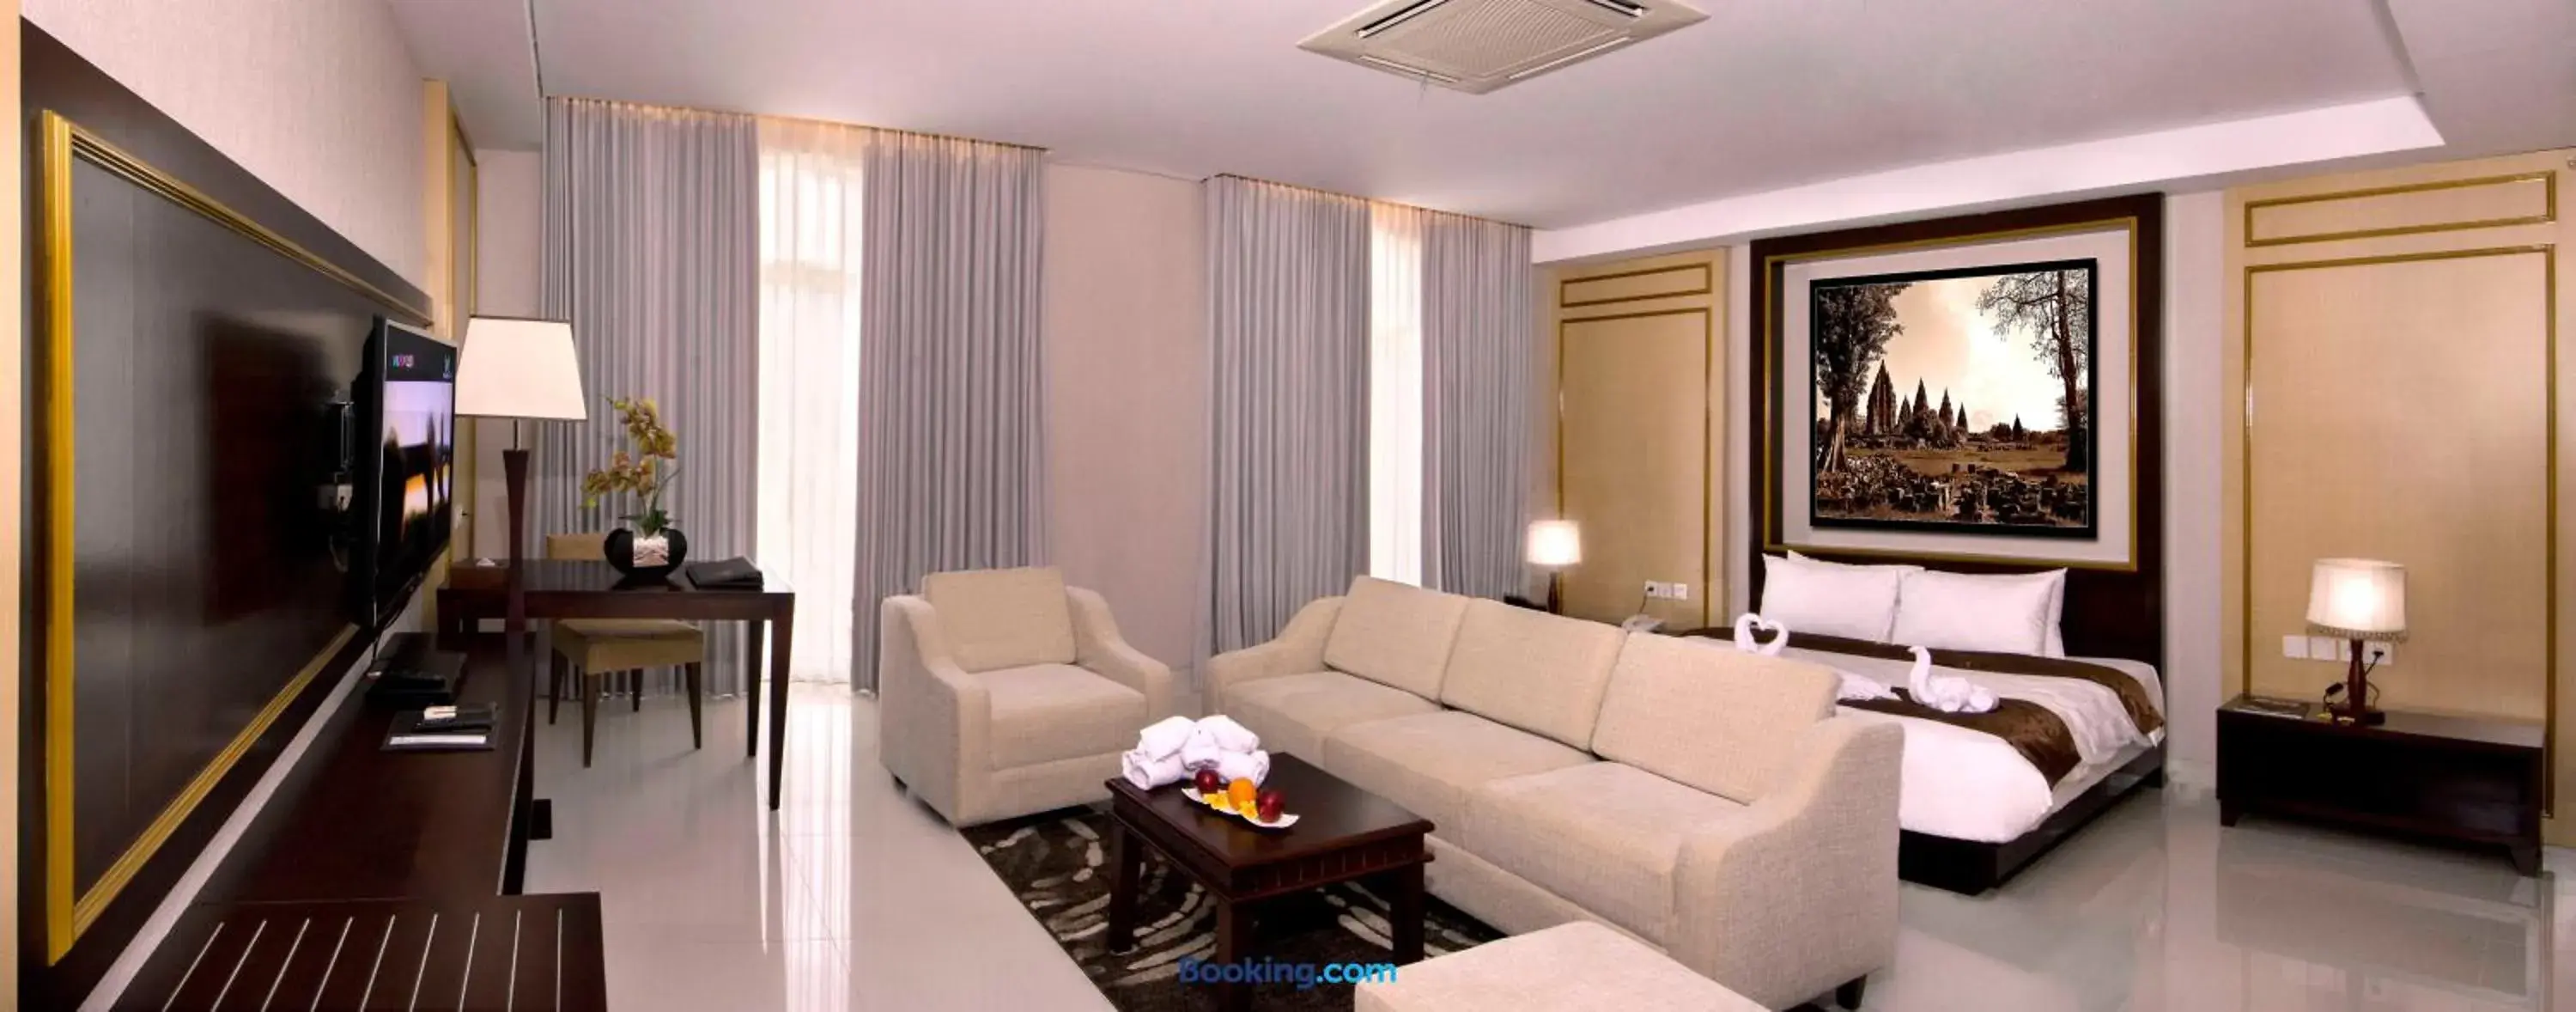 Bedroom, Seating Area in Gallery Prawirotaman Hotel